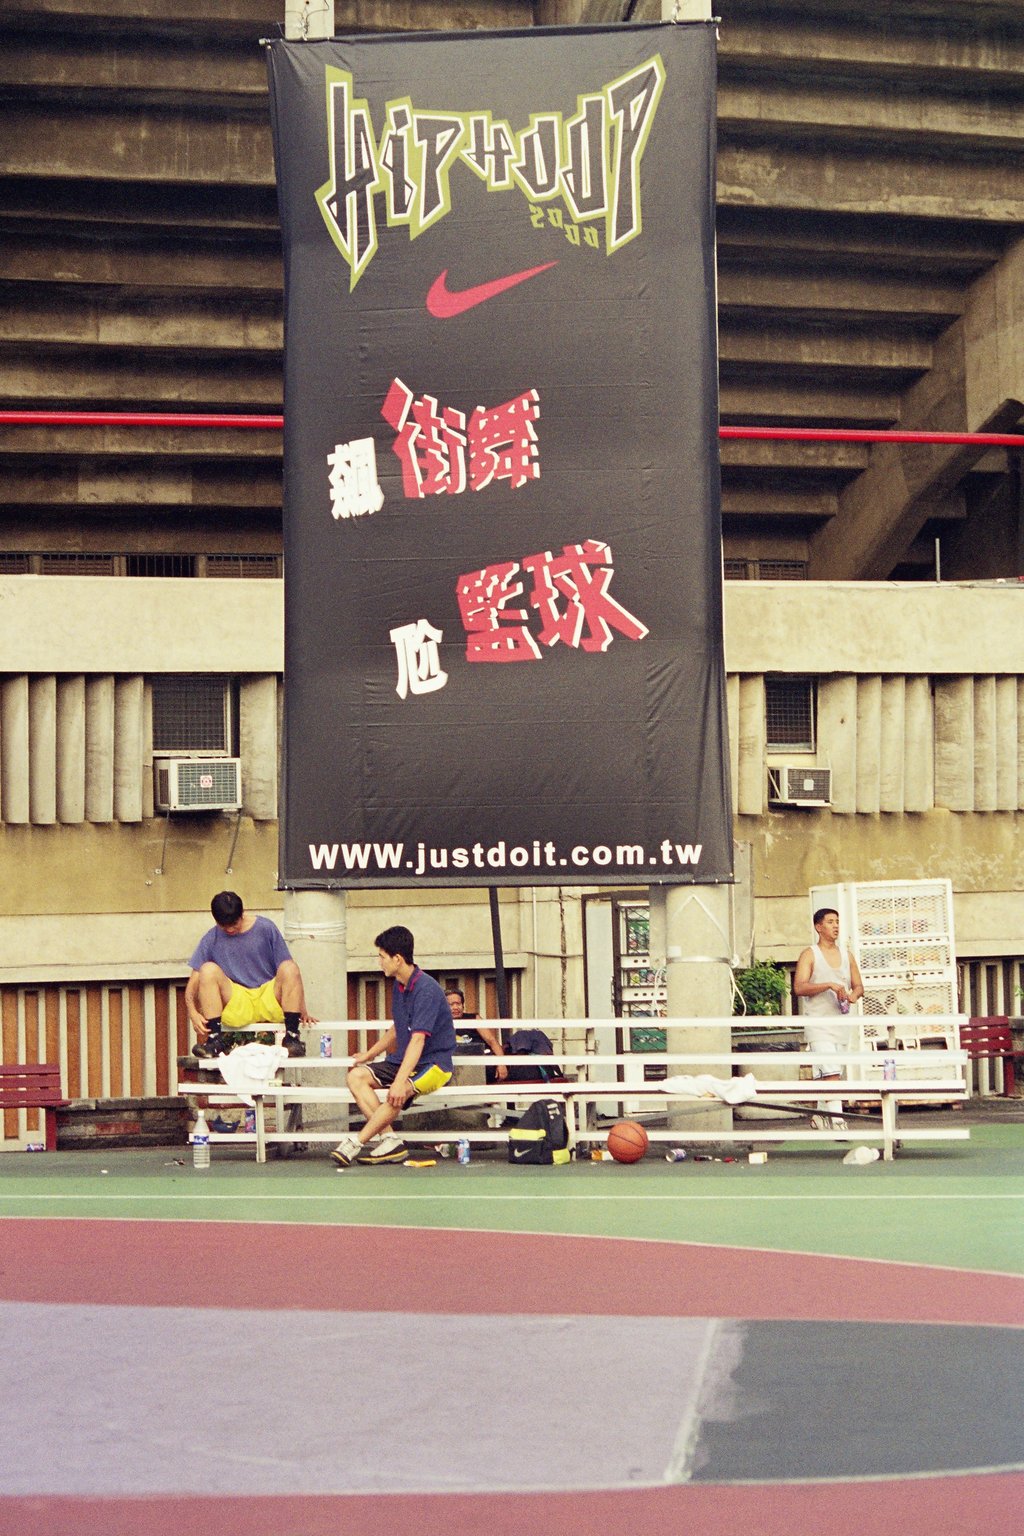 街頭籃球攝影台中籃球場台灣體育學院